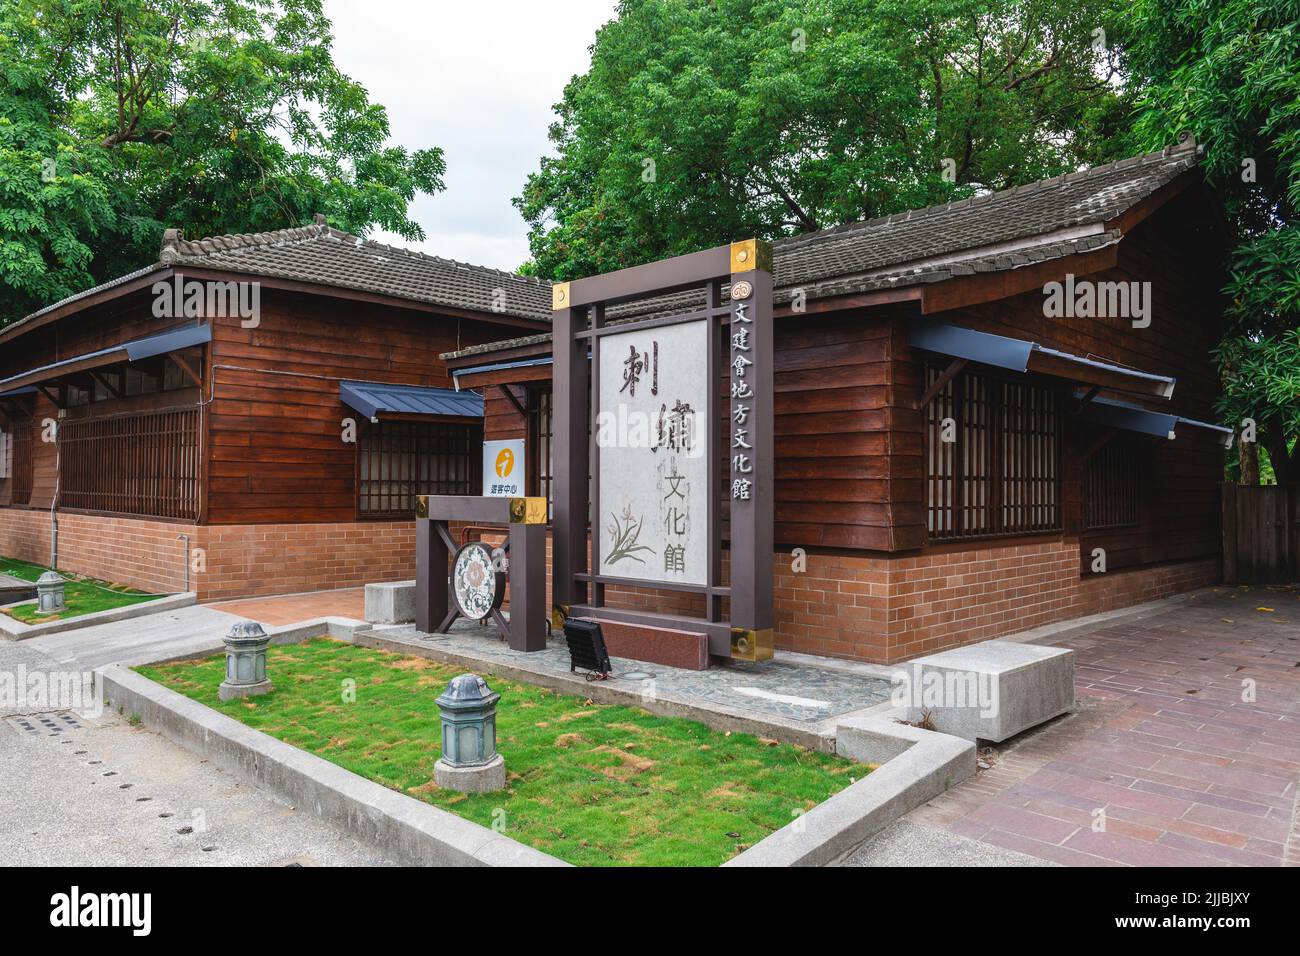 16 luglio 2022: Puzi Embroidery Culture Center a Puzi City, chiayi, taiwan. Era un tempo il negozio ufficiale di sale durante la dinastia Qing e il Giappone Foto Stock